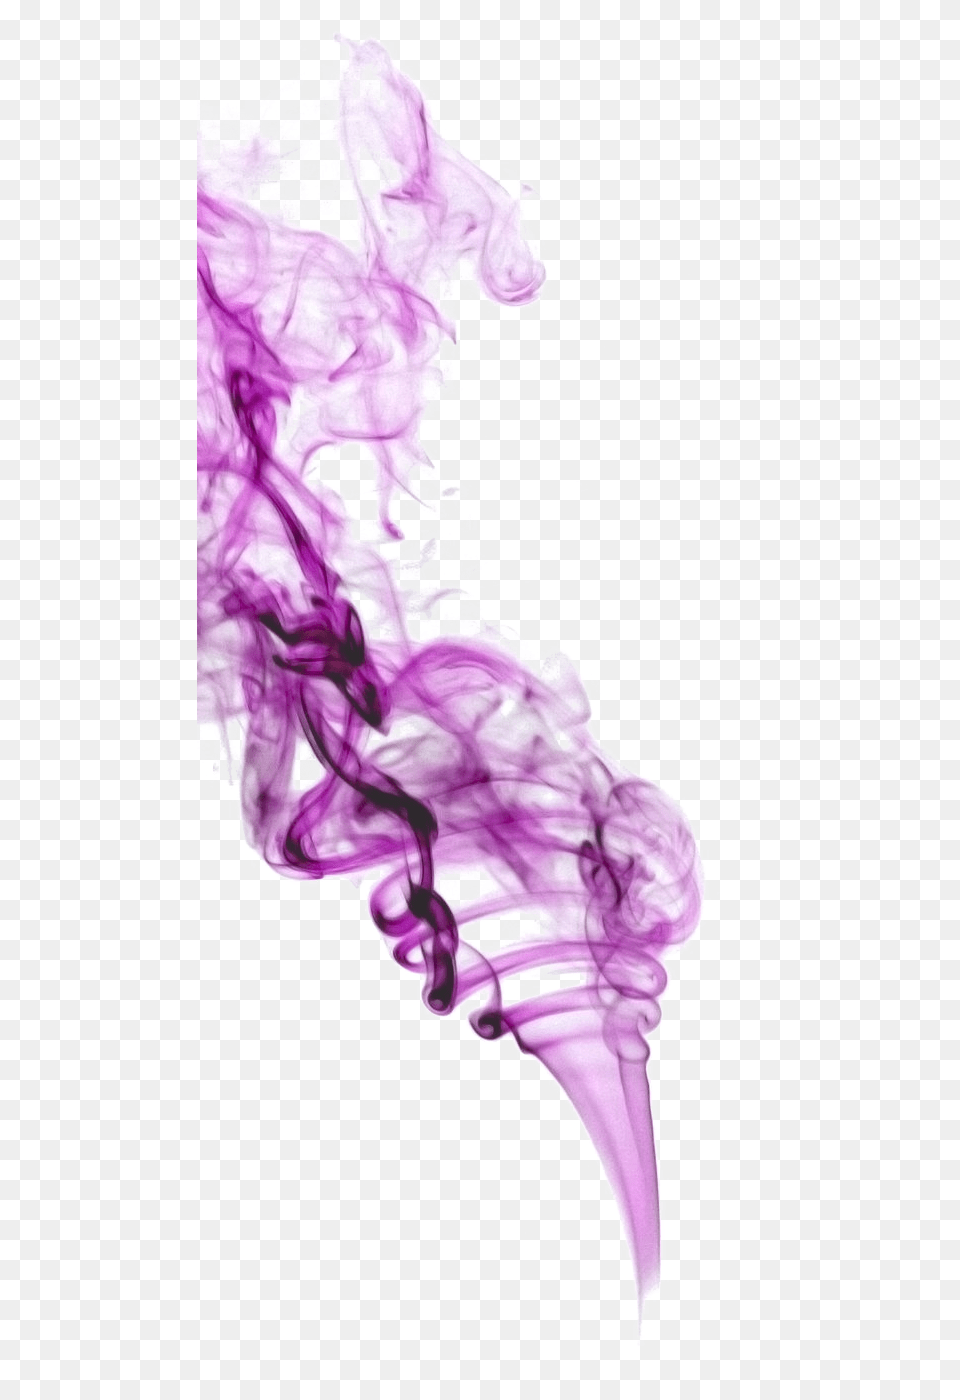 Purple Smoke Purple Smoke, Person Free Transparent Png